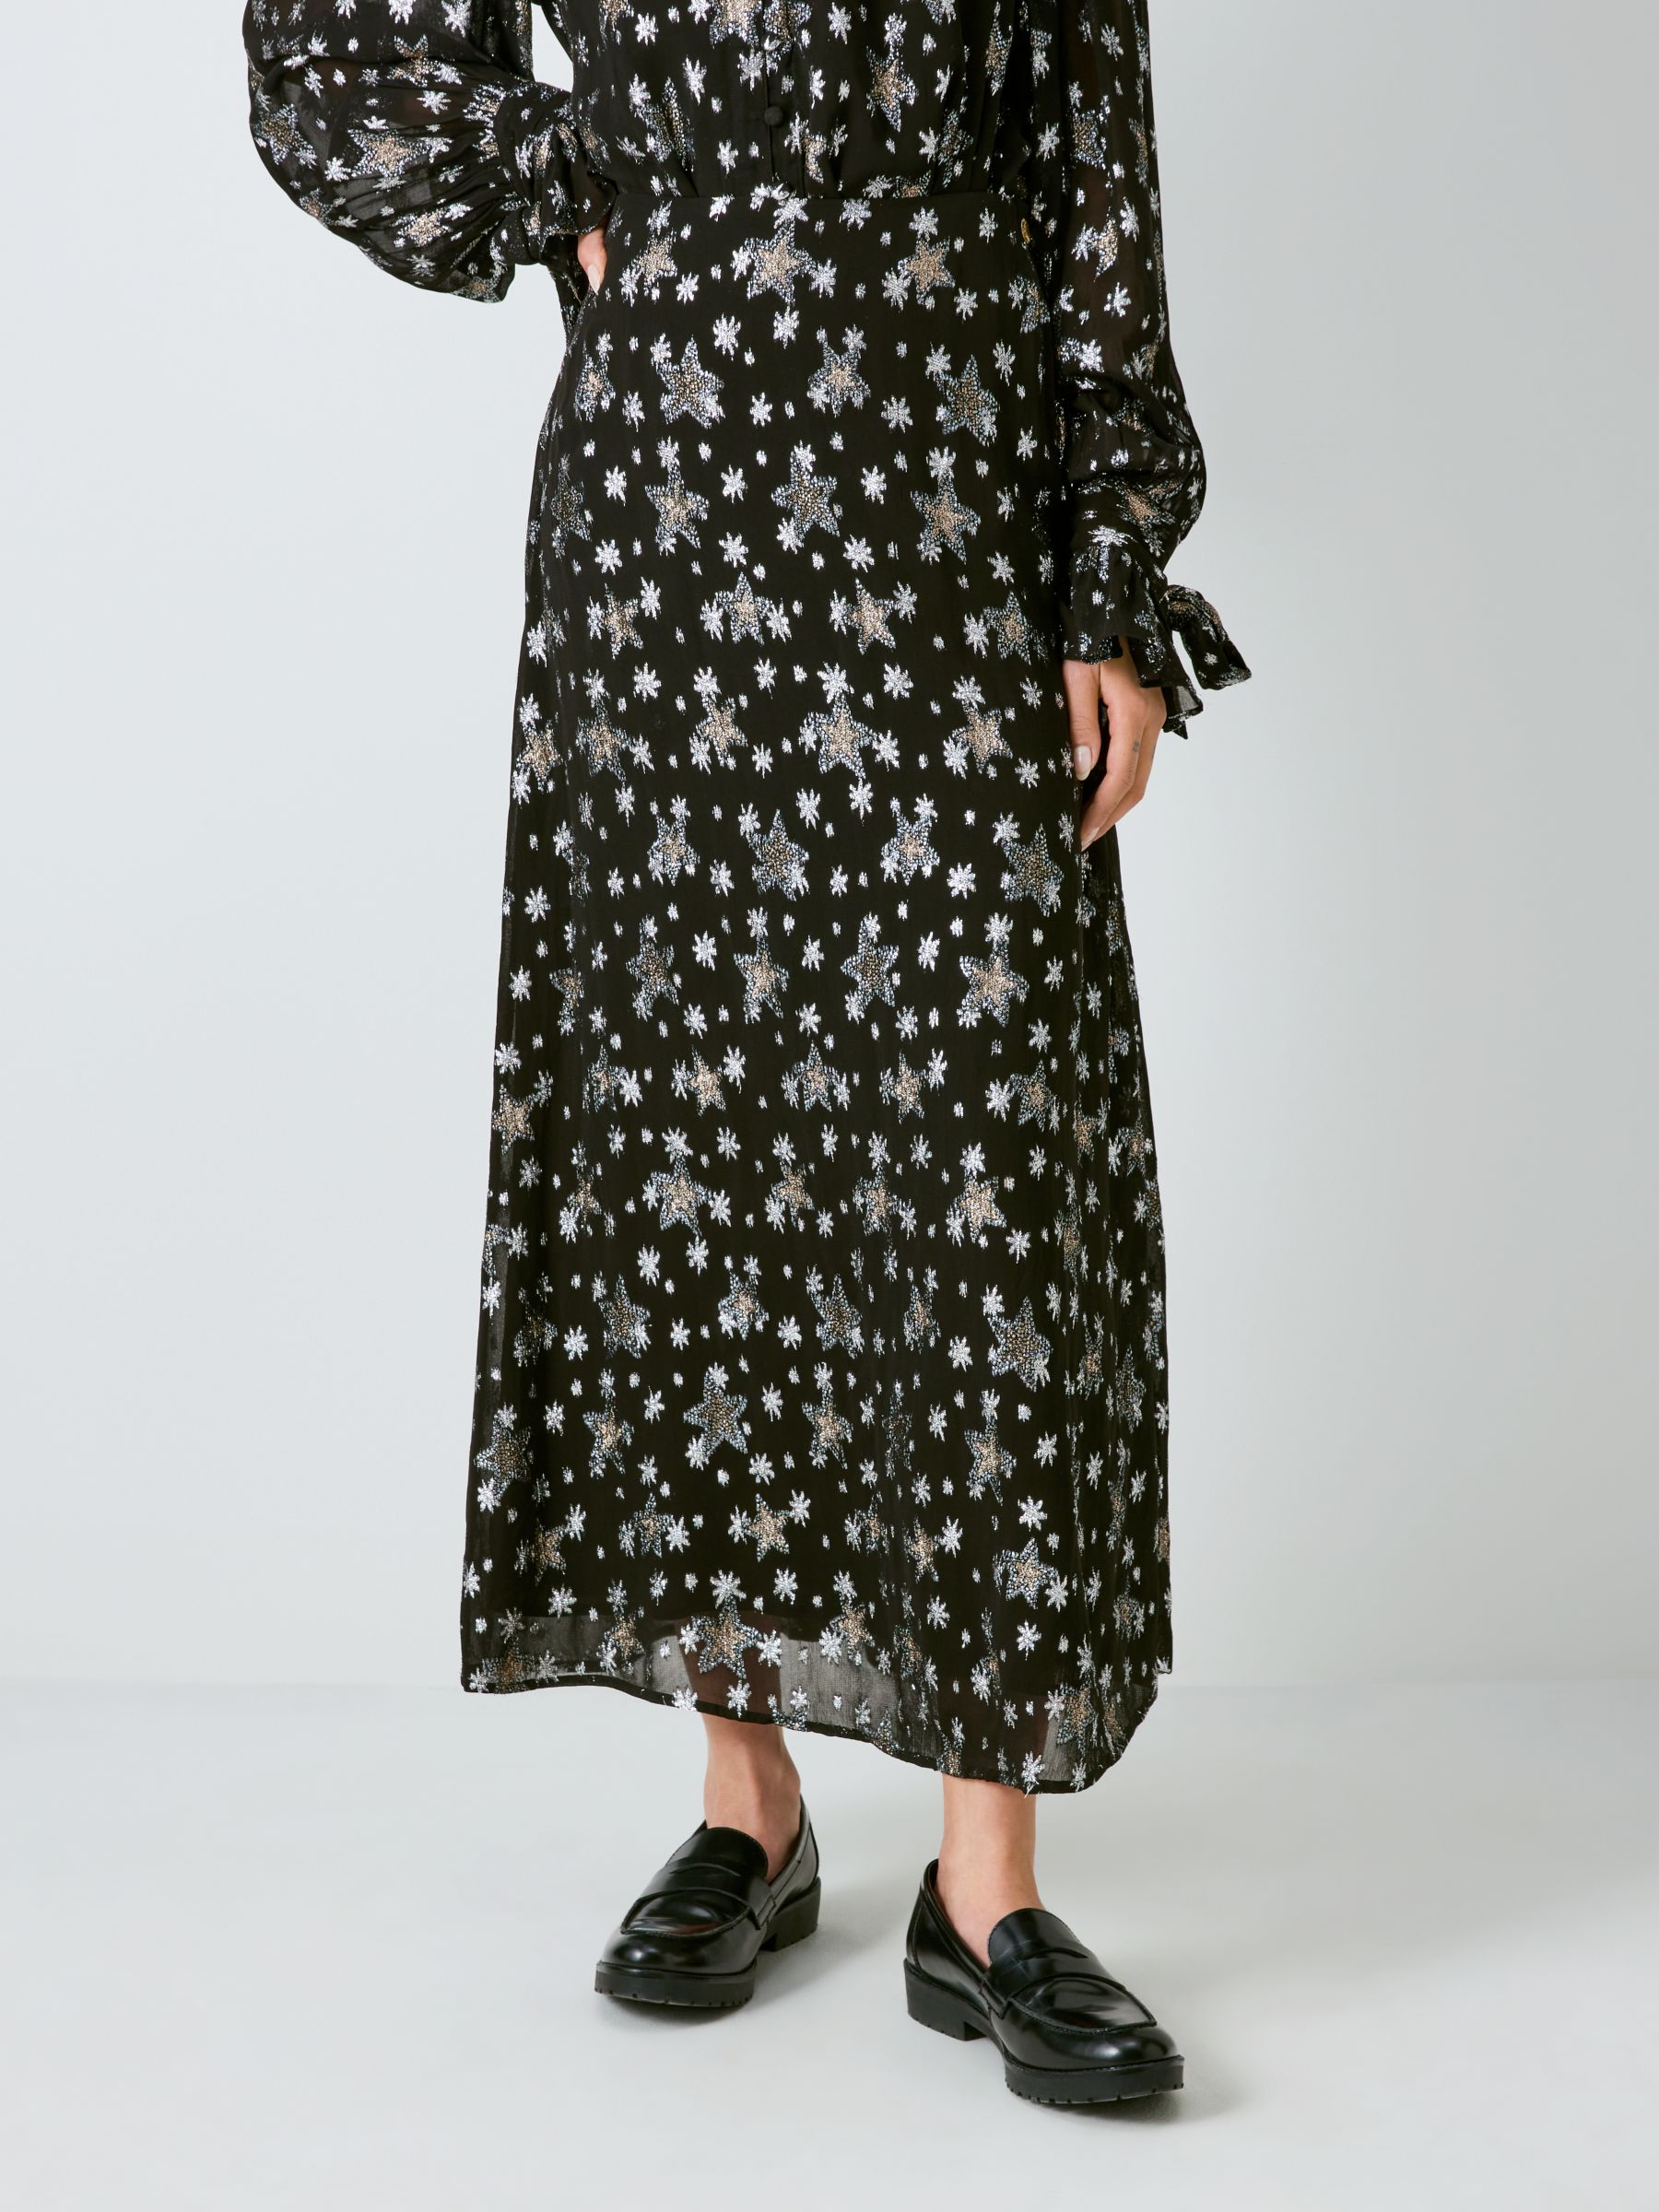 Fabienne Chapot Lydia Indi Star Print Midi Skirt, Black/Silver